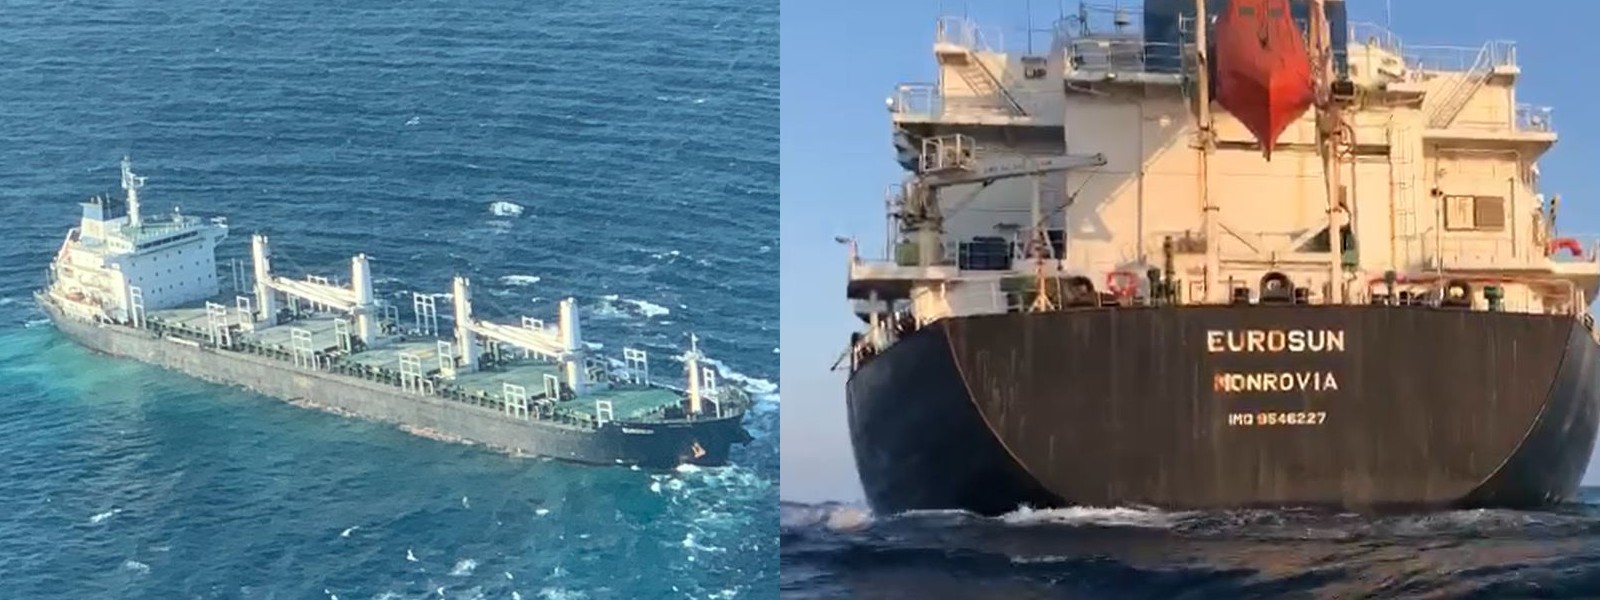 Bulk Carrier distressed near Little Basses Reef – 33,000 MT of Clinker aboard